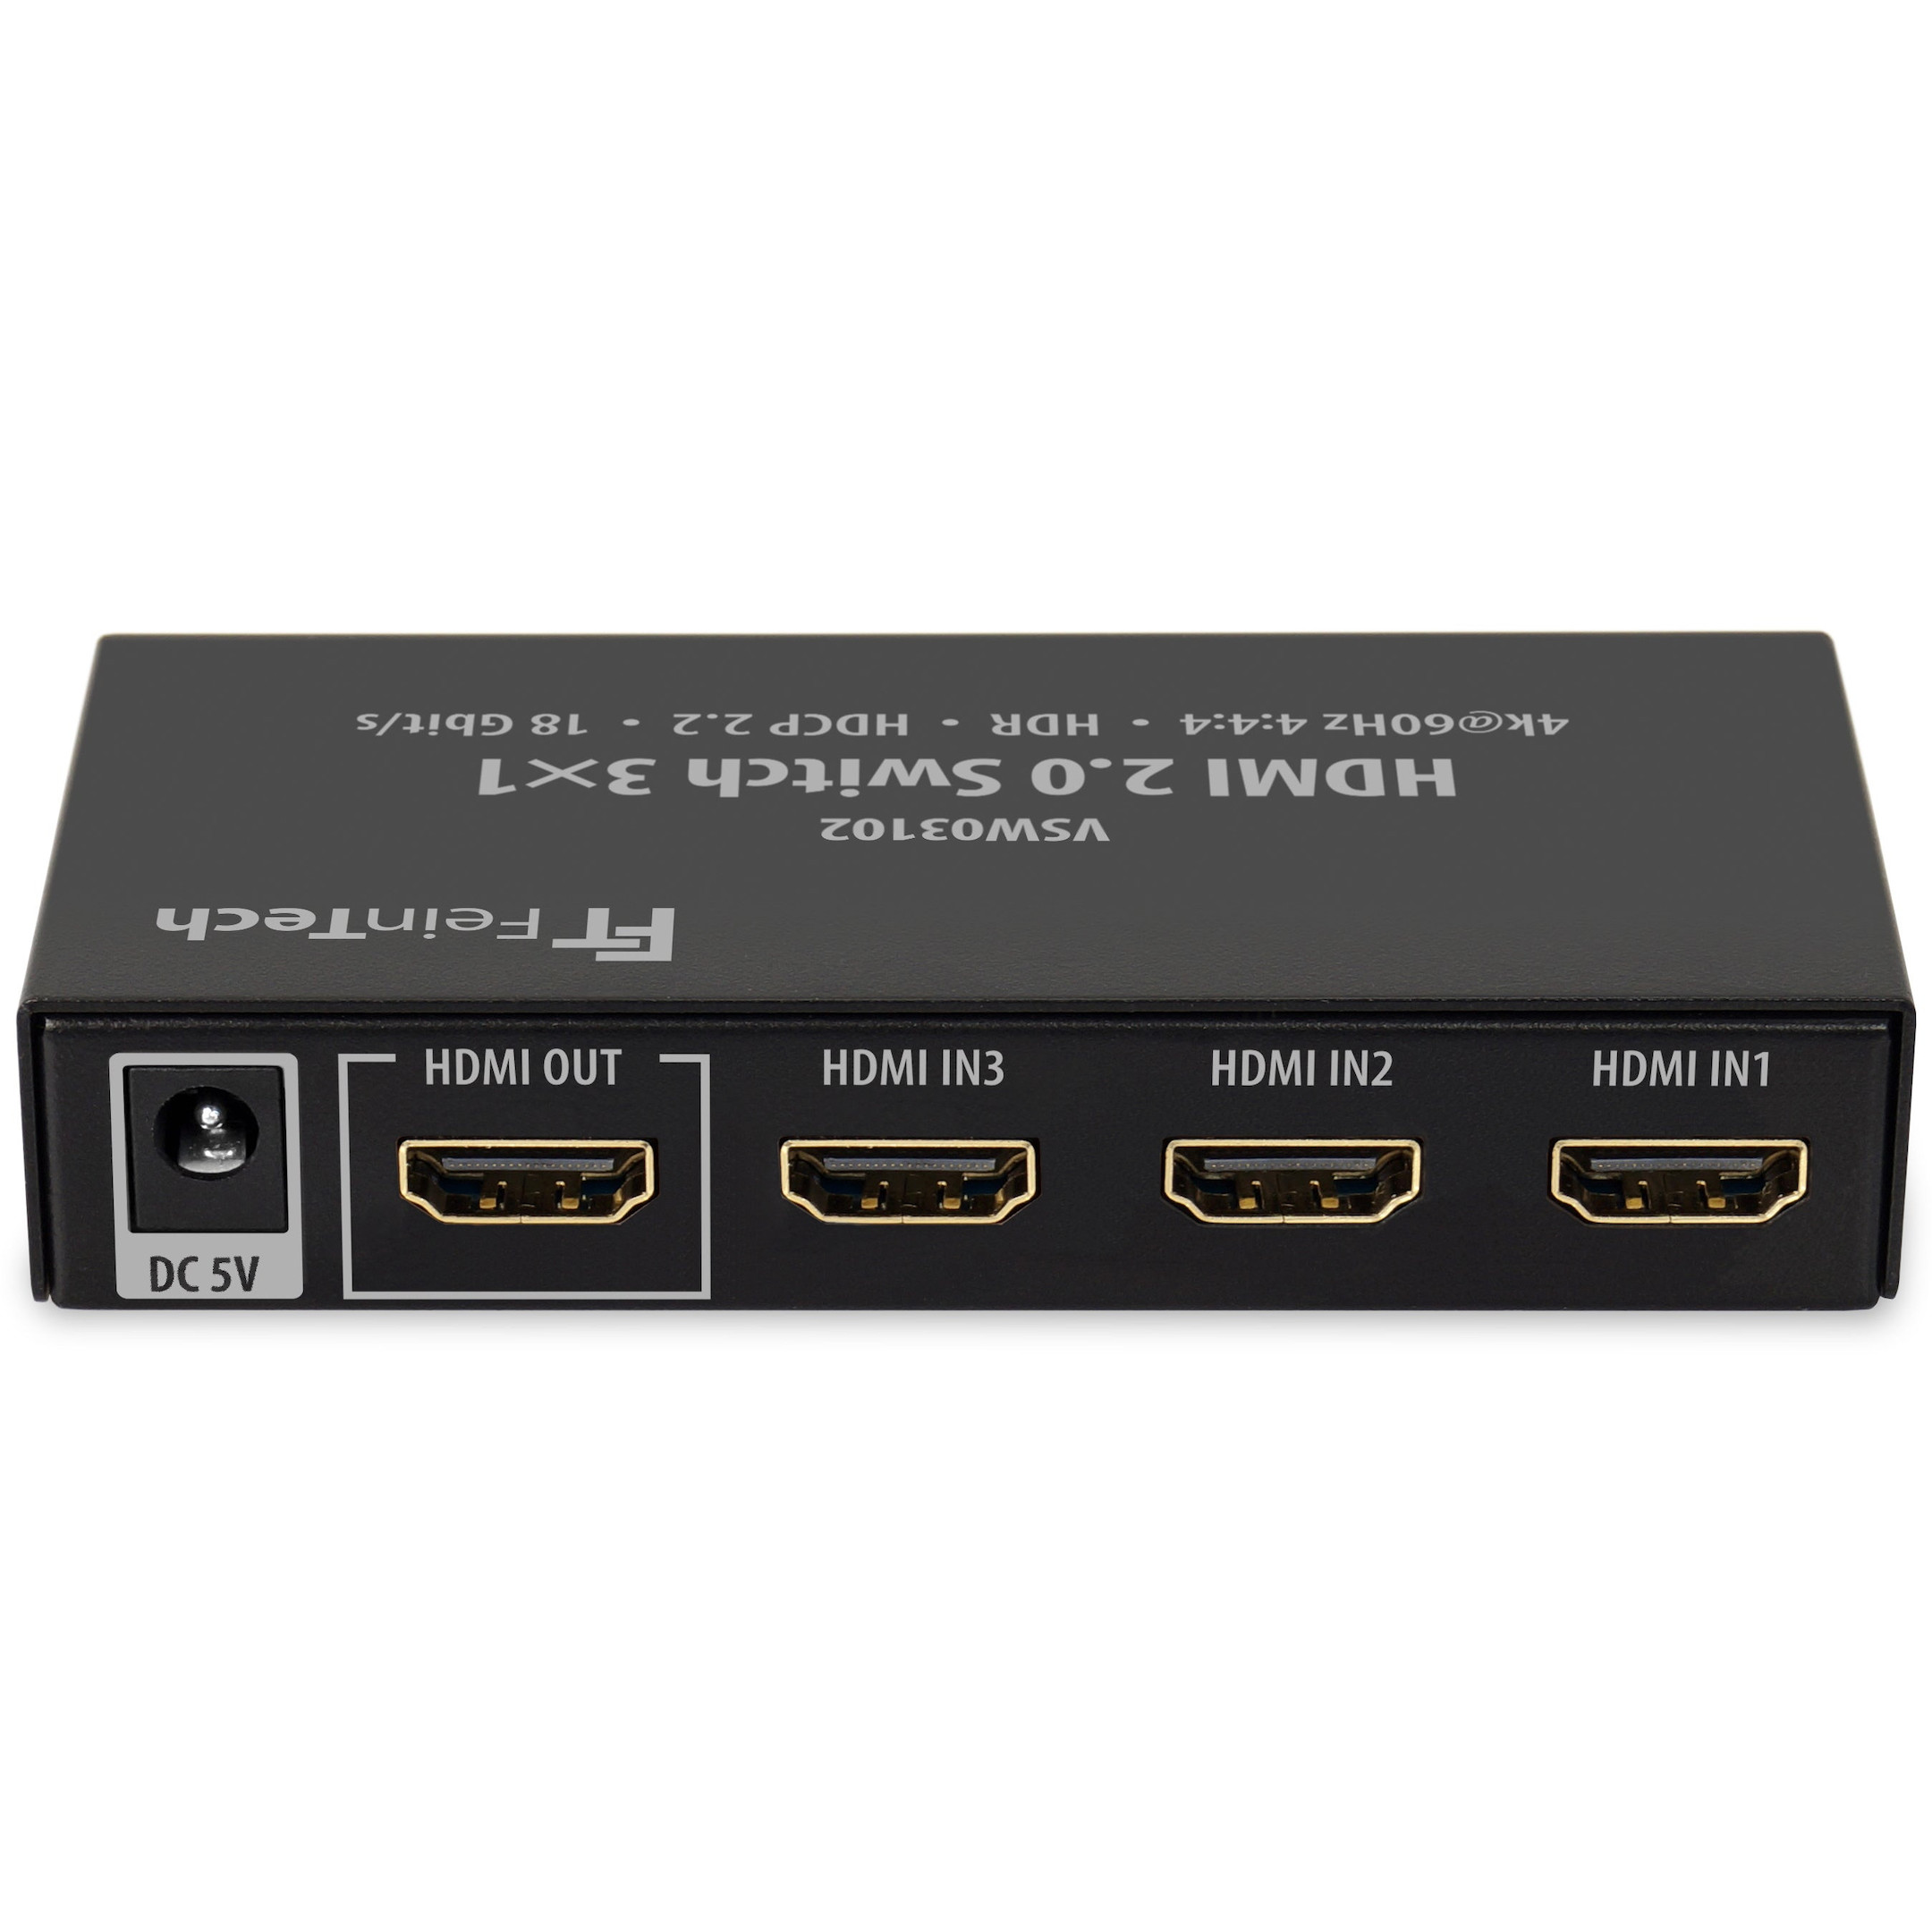 FeinTech-VSW03102-HDMI-switch-3-In-1-Uit-4K-60Hz-Automatisch-Schakelen